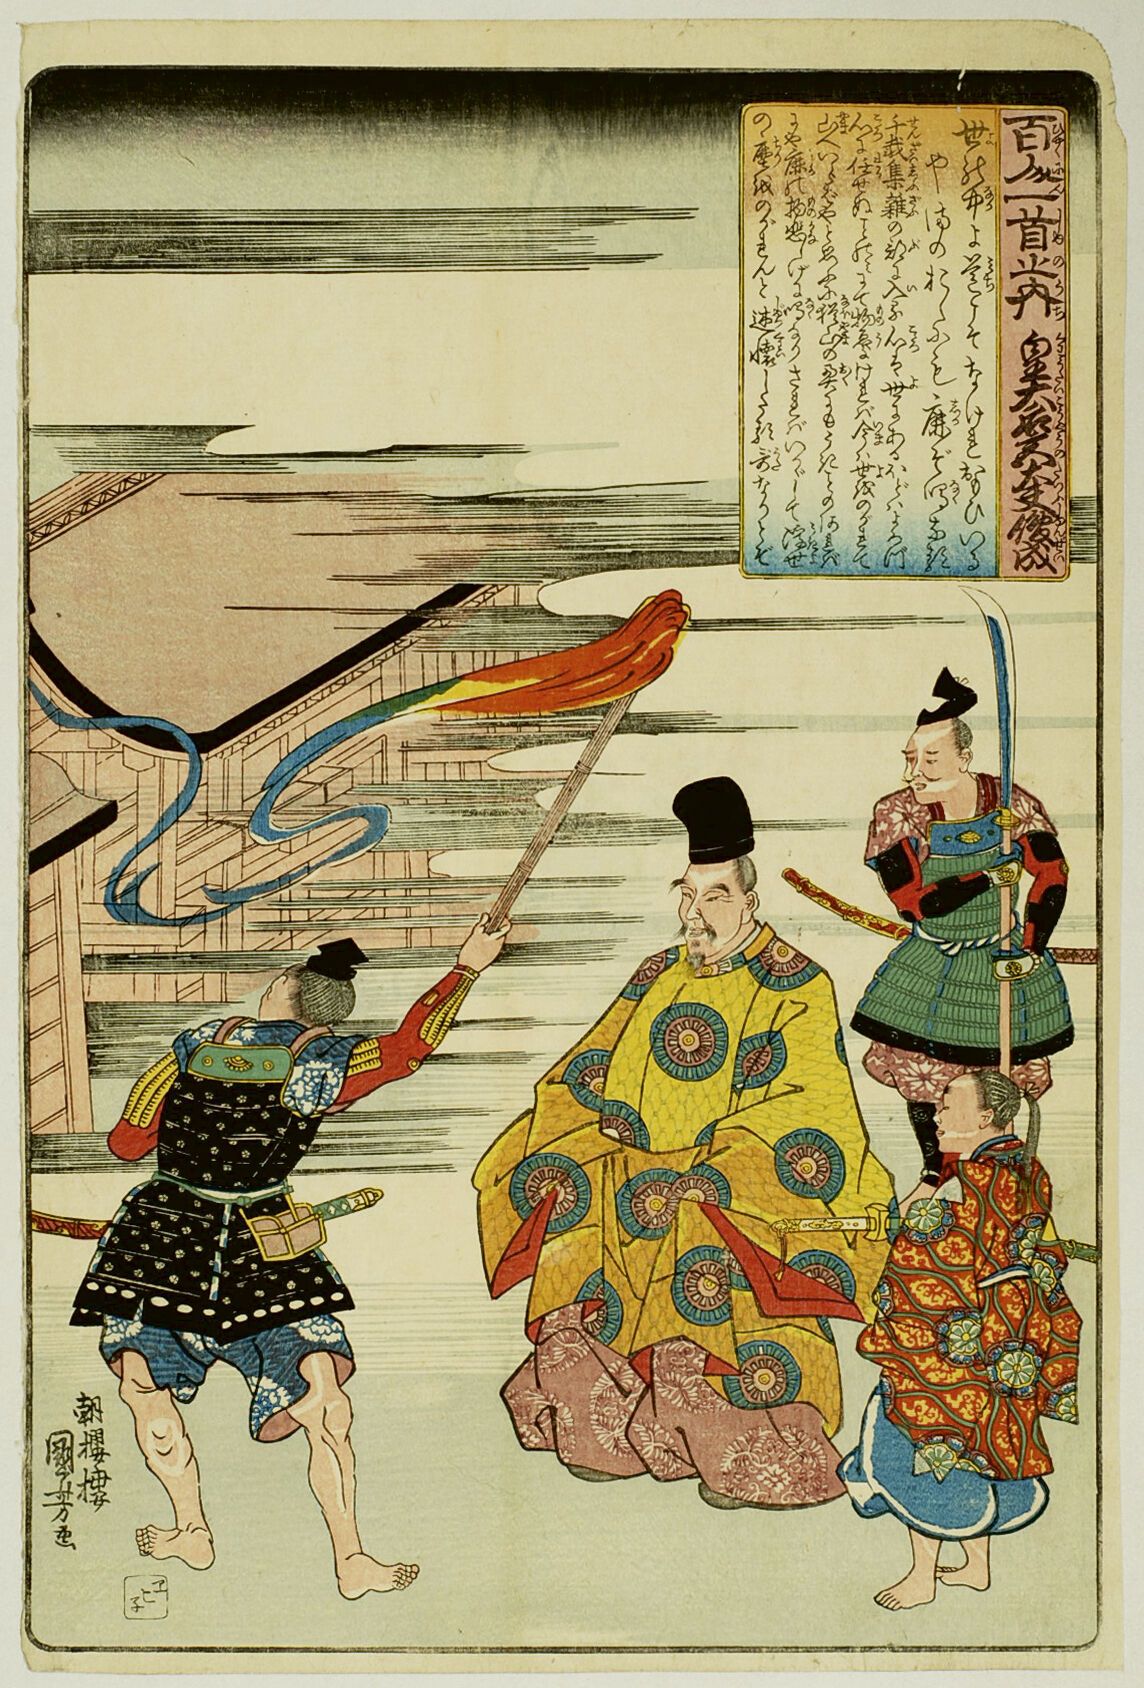 Null 宇都宫邦彦 (1797-1861)
百人一首》系列中的 "大板"（Oban tate-e），板块为 "Kôtaikôgû-no-tayû Shunze&hellip;